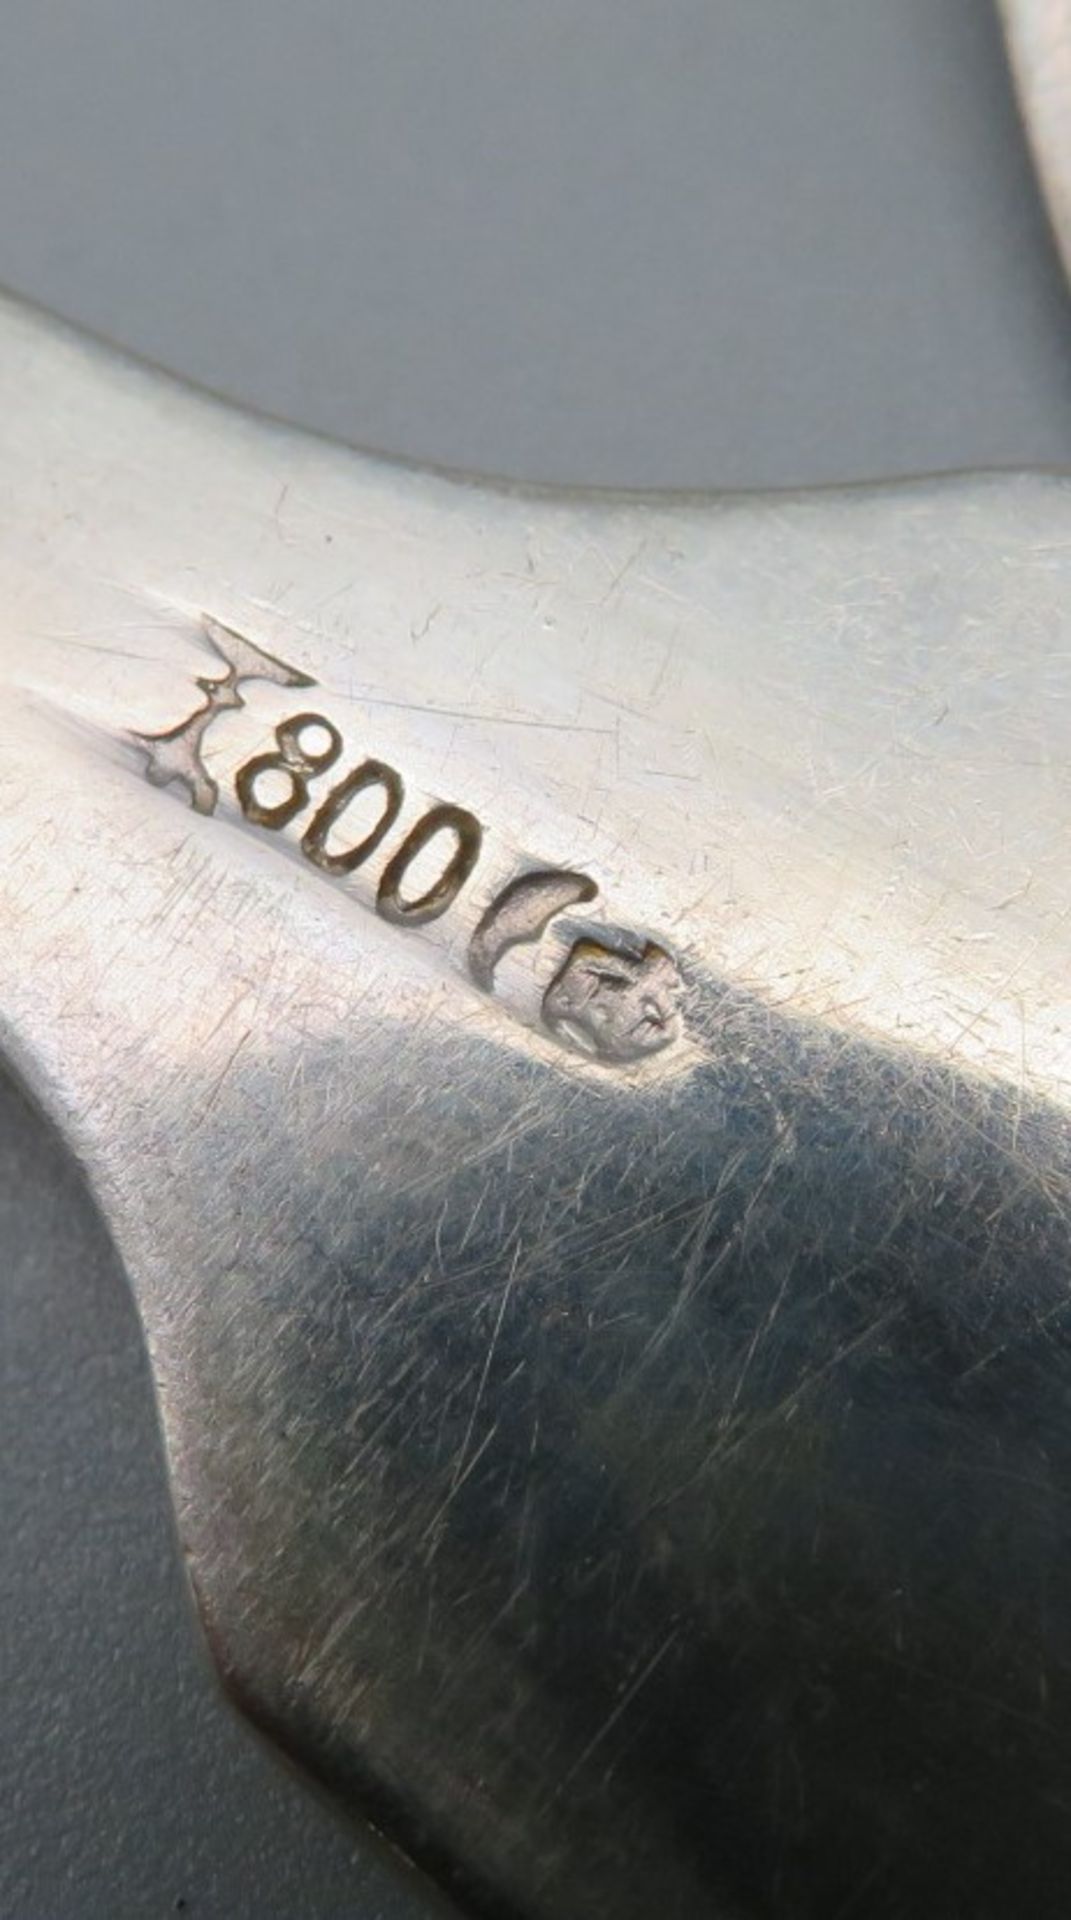 6 Löffel, Koch & Bergfeld Bremen, Spatenform, Silber 800/000, punziert, 350 g, Monogrammgravur "AU" - Bild 2 aus 2